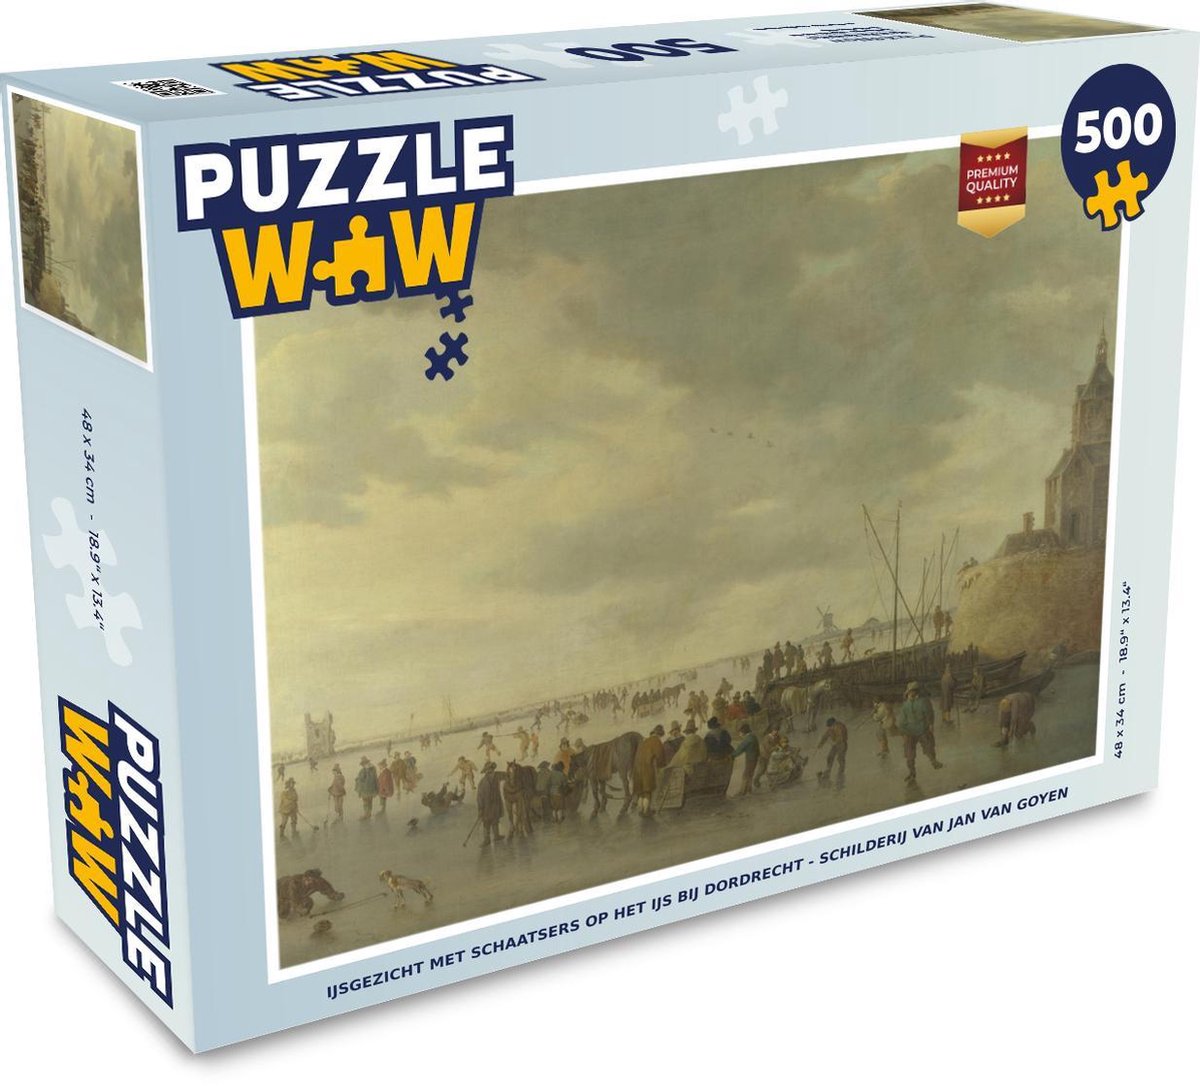 Puzzel 500 stukjes Jan Van Goyen - IJsgezicht met schaatsers op het ijs bij Dordrecht - Schilderij van Jan van Goyen puzzel 500 stukjes  - PuzzleWow heeft +100000 puzzels - PuzzleWow